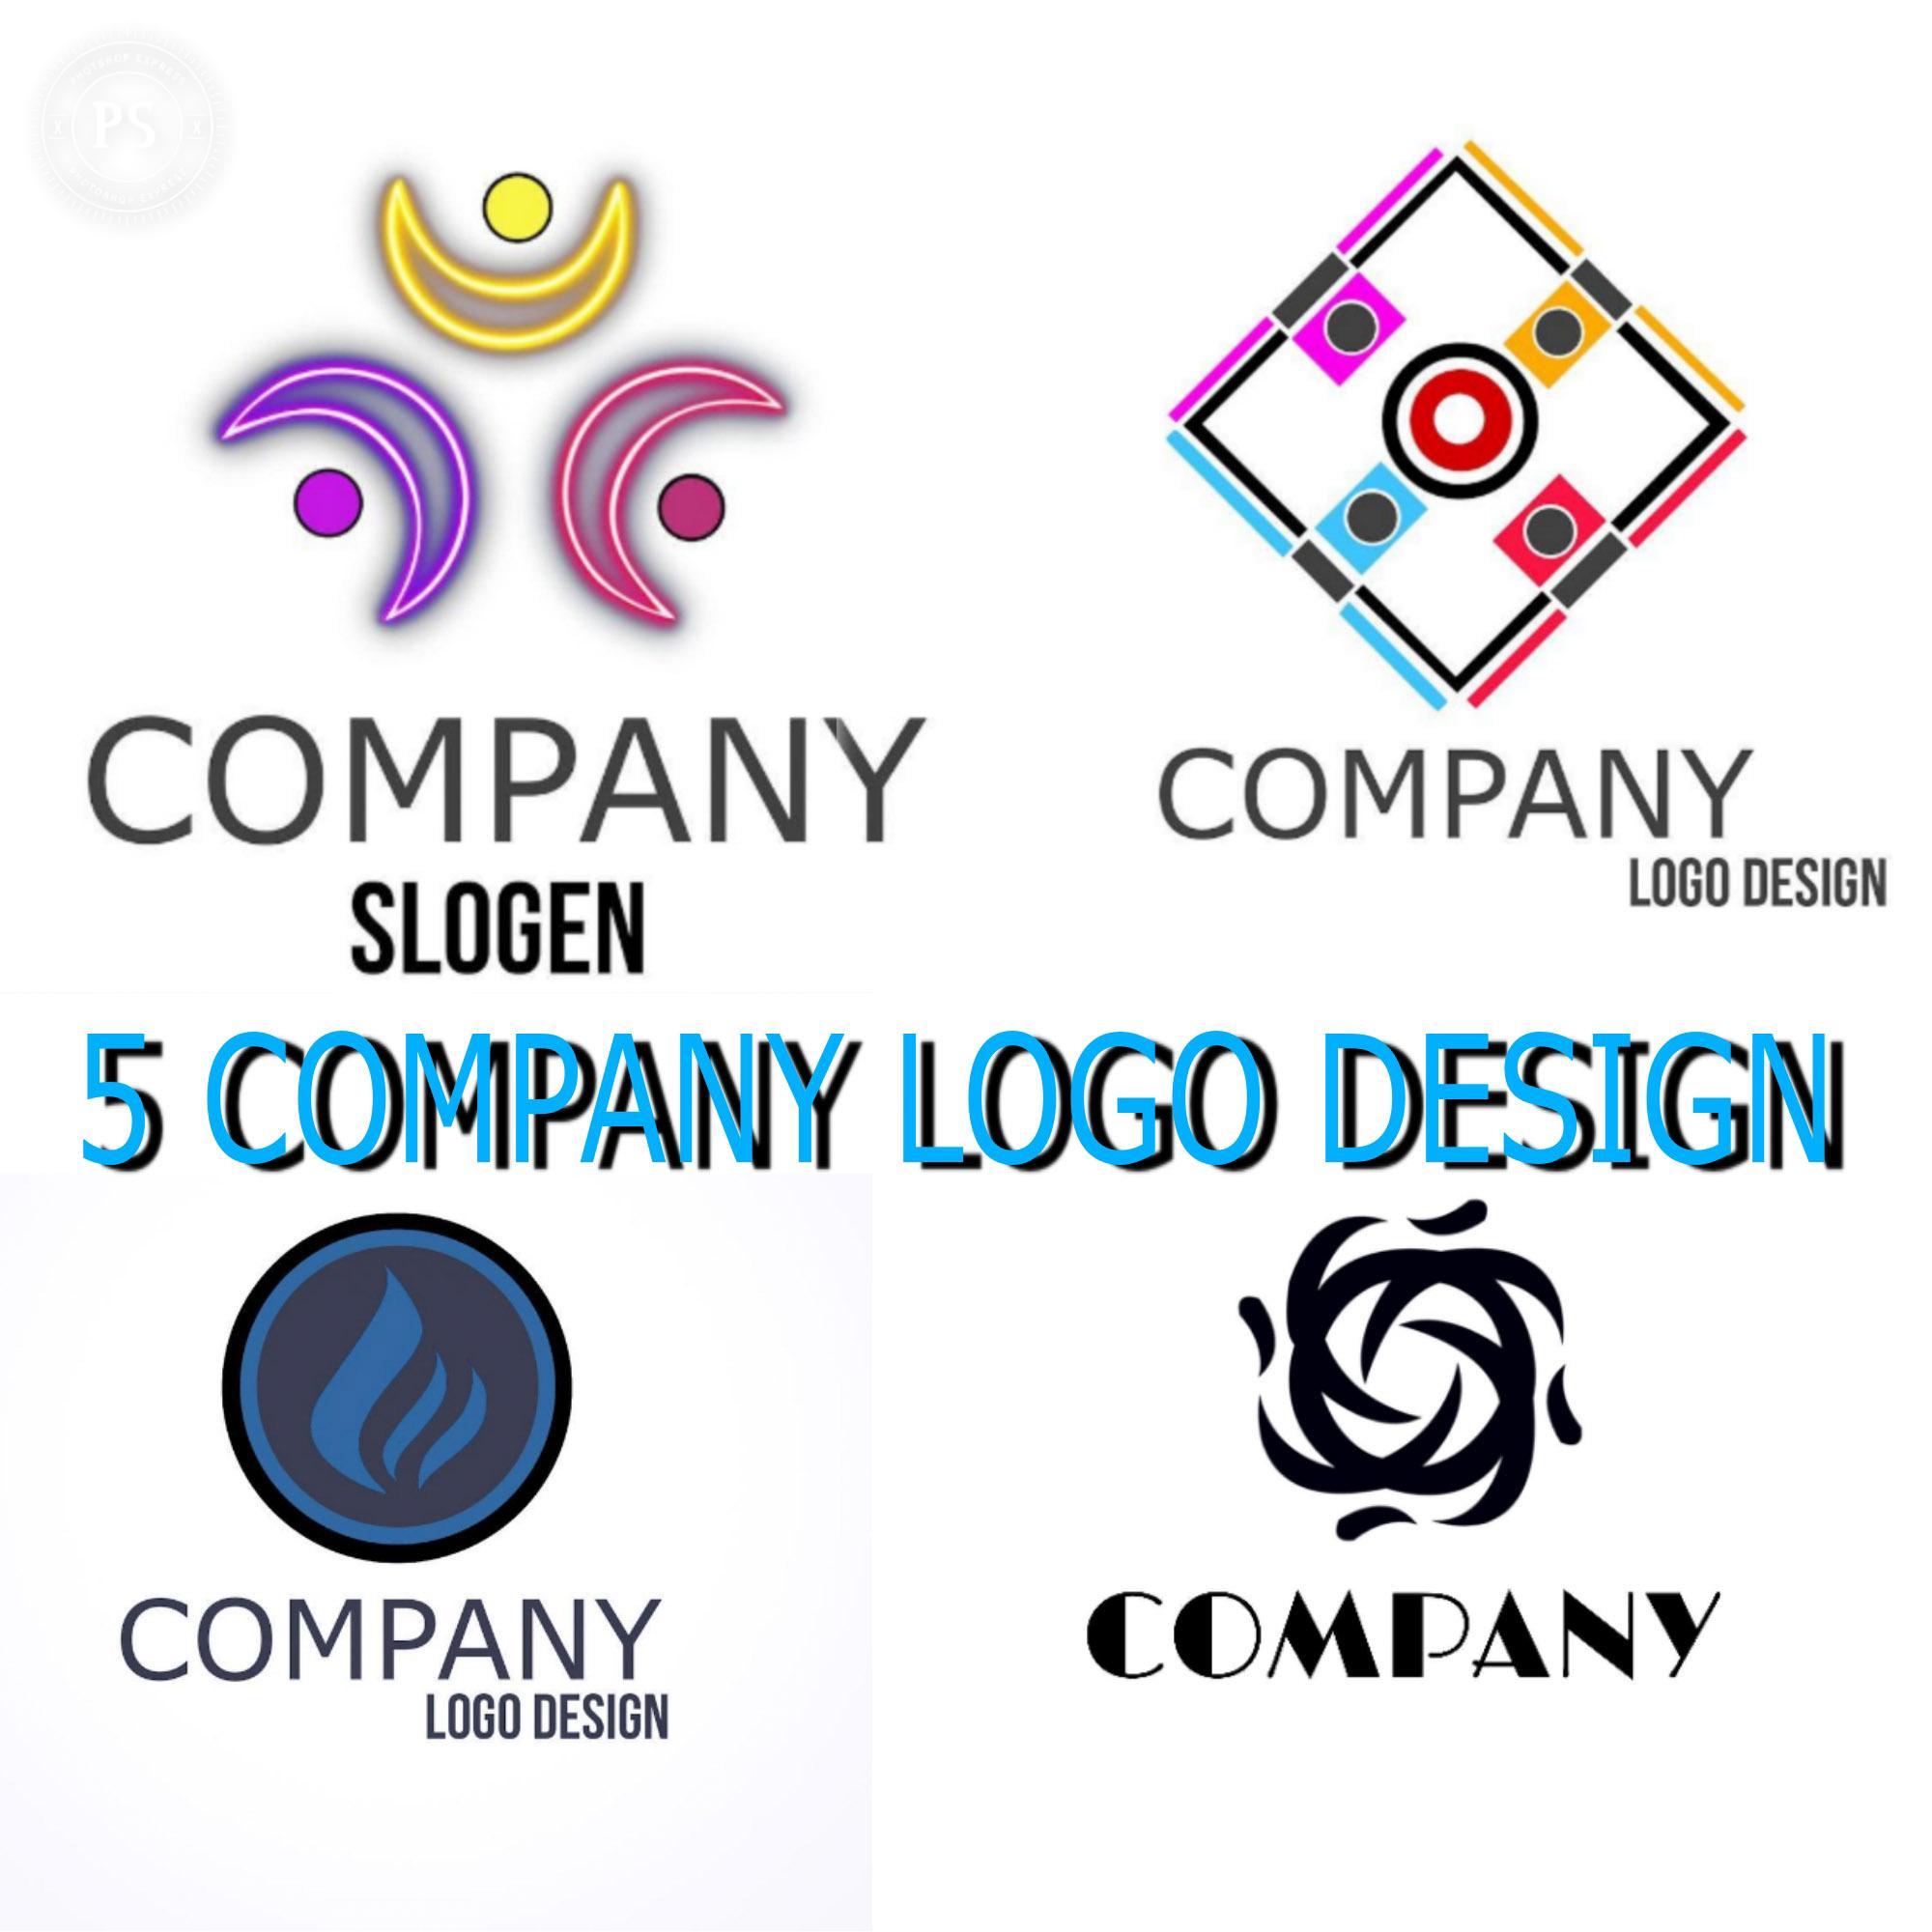 creative logo design ideas